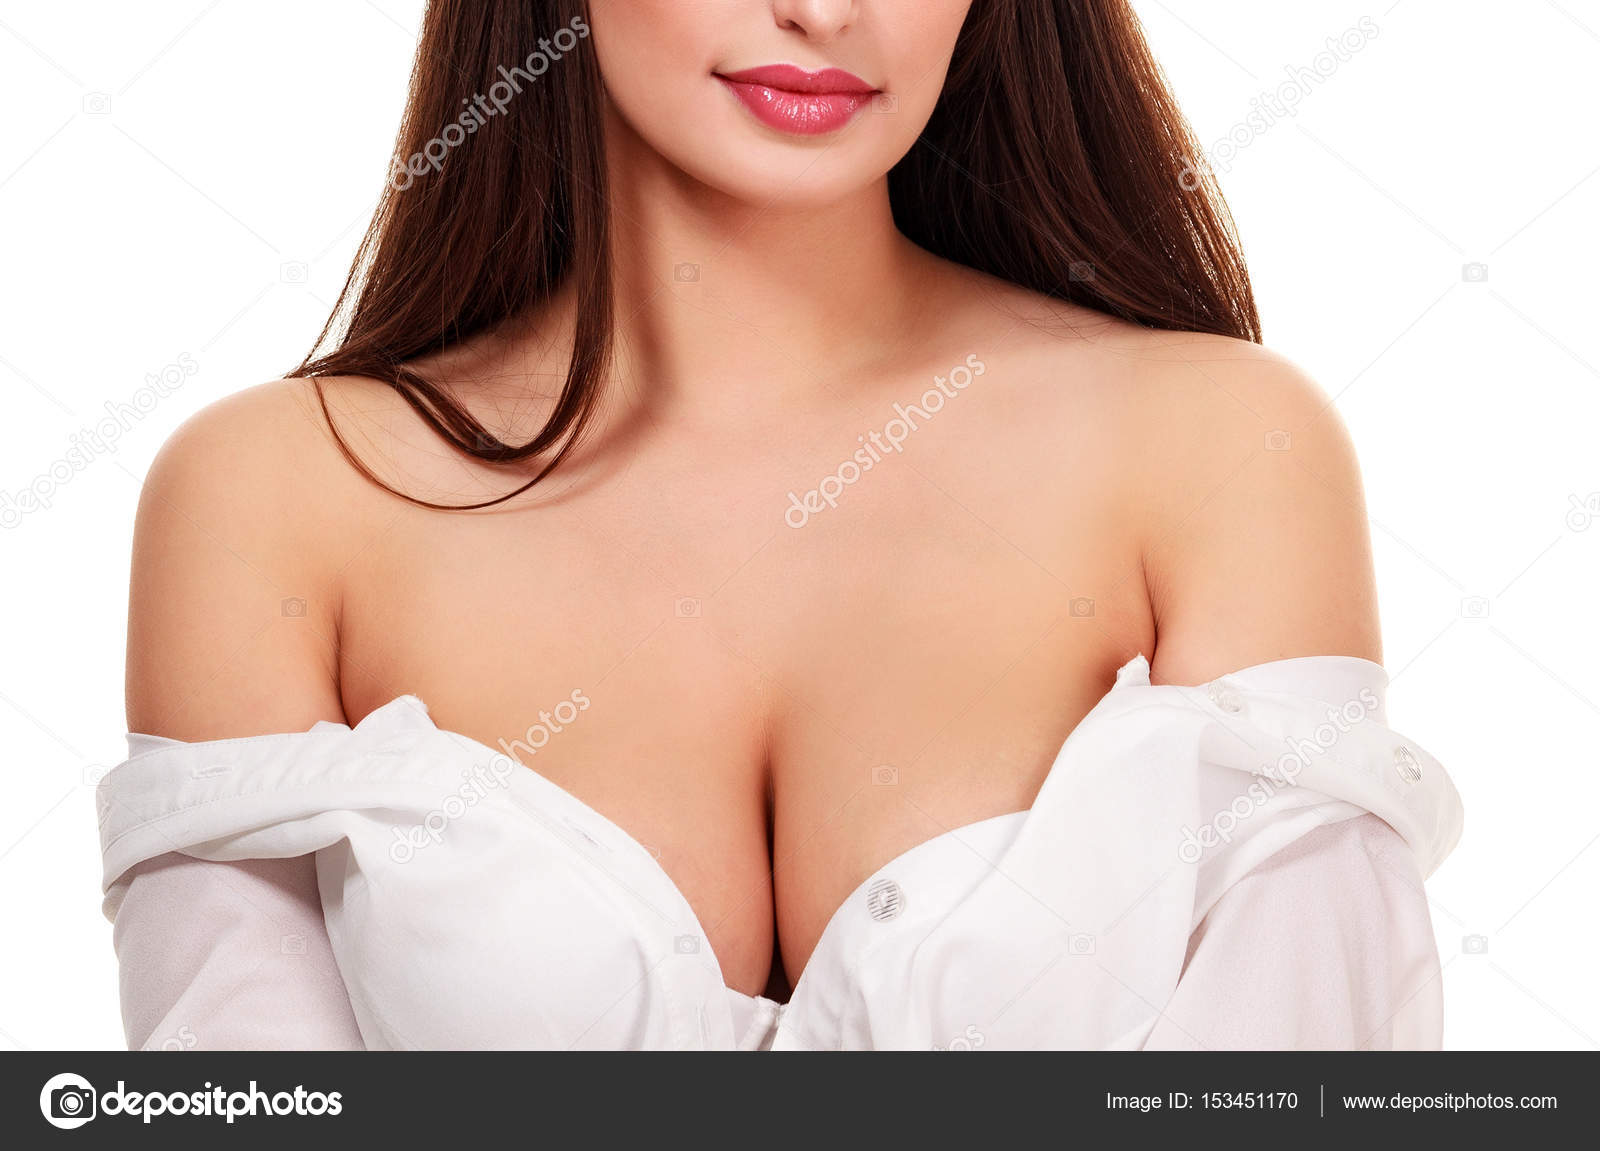 Undressing big boobs